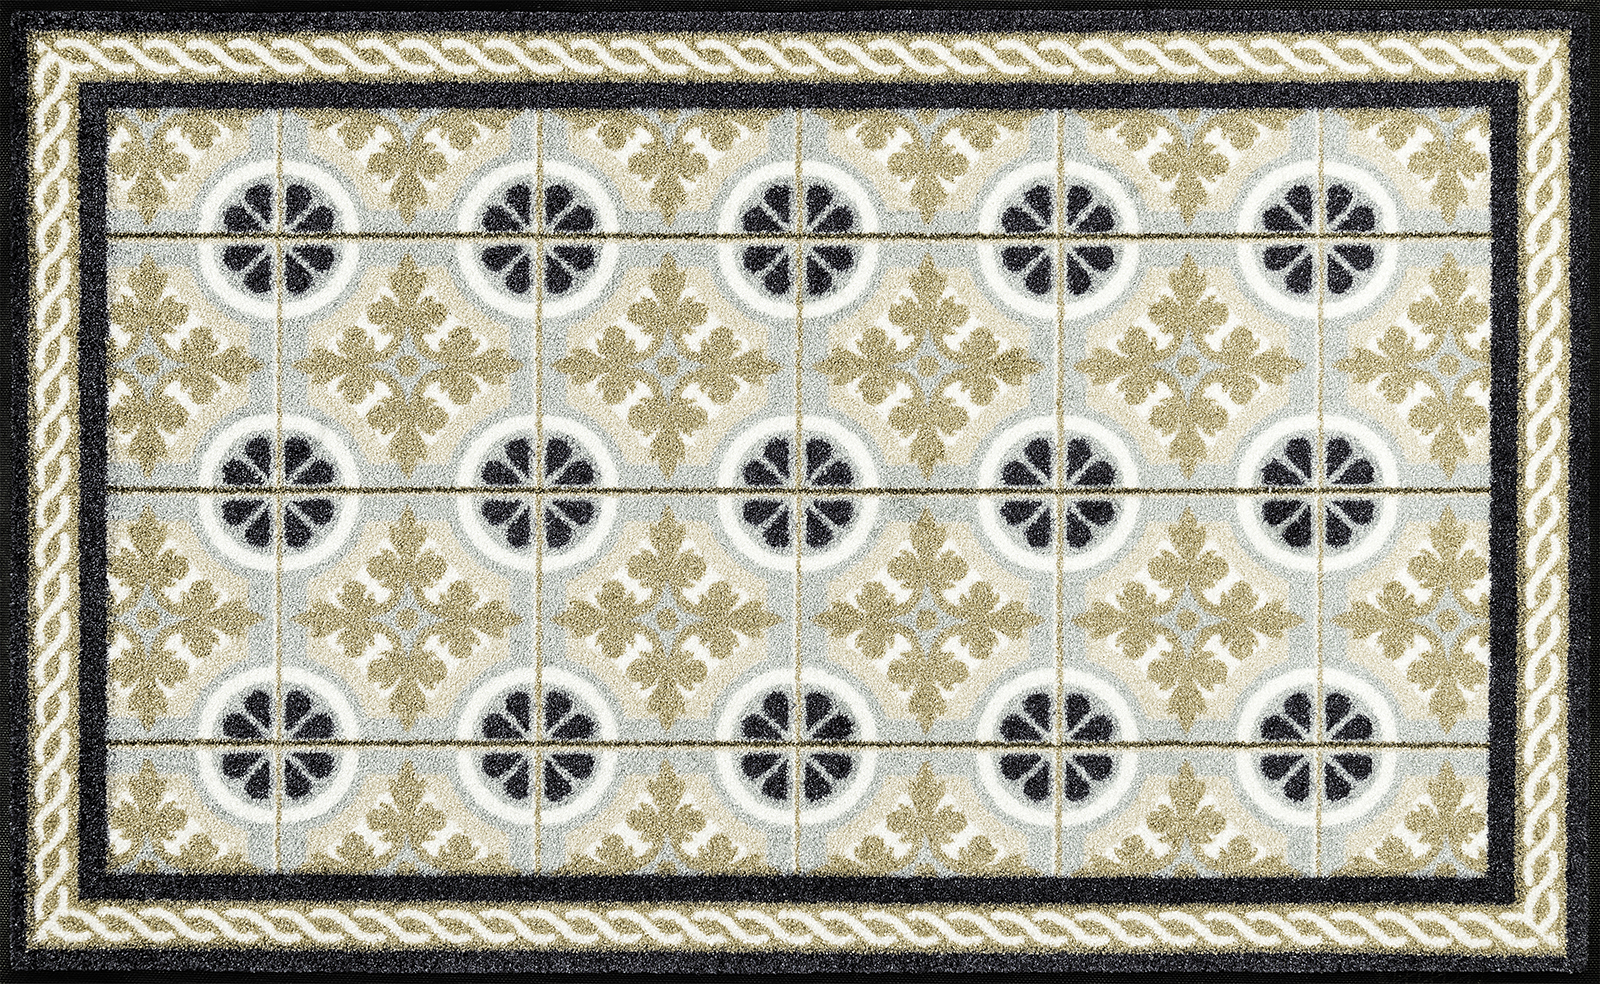 Küchenmatte Kitchen Tiles, Wash & Dry im Mosaikdesign, 75 x 120 cm, Draufsicht